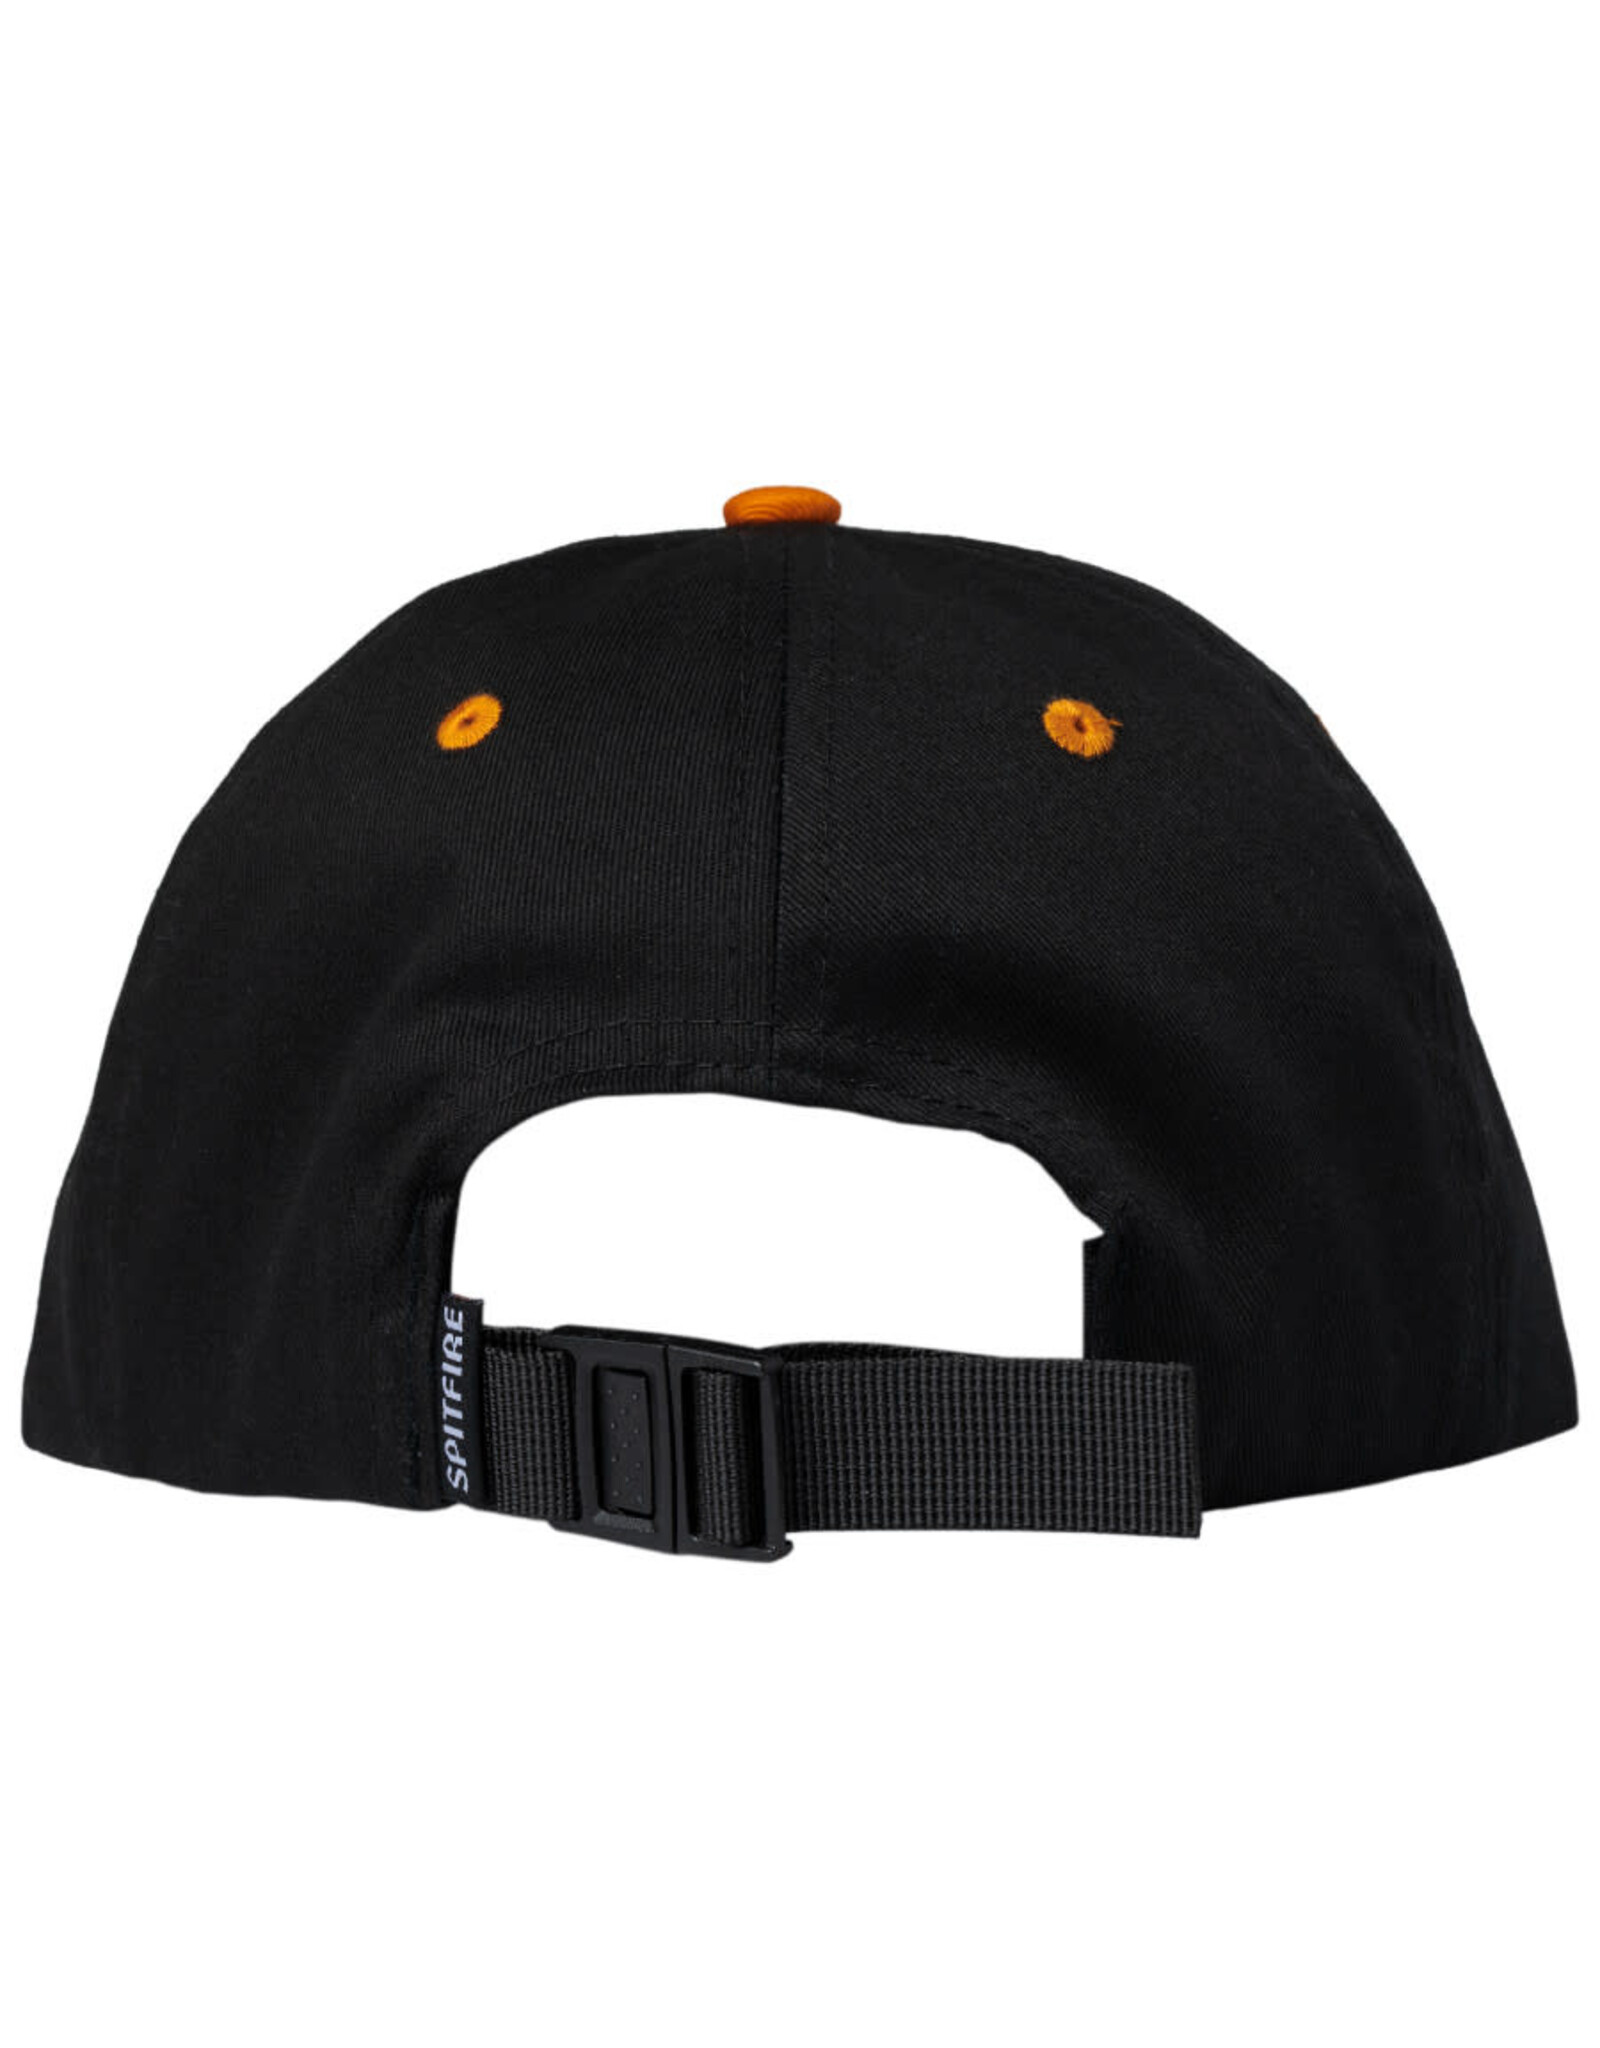 Spitfire Spitfire Hat Lil Bighead Strapback (Black/Orange)